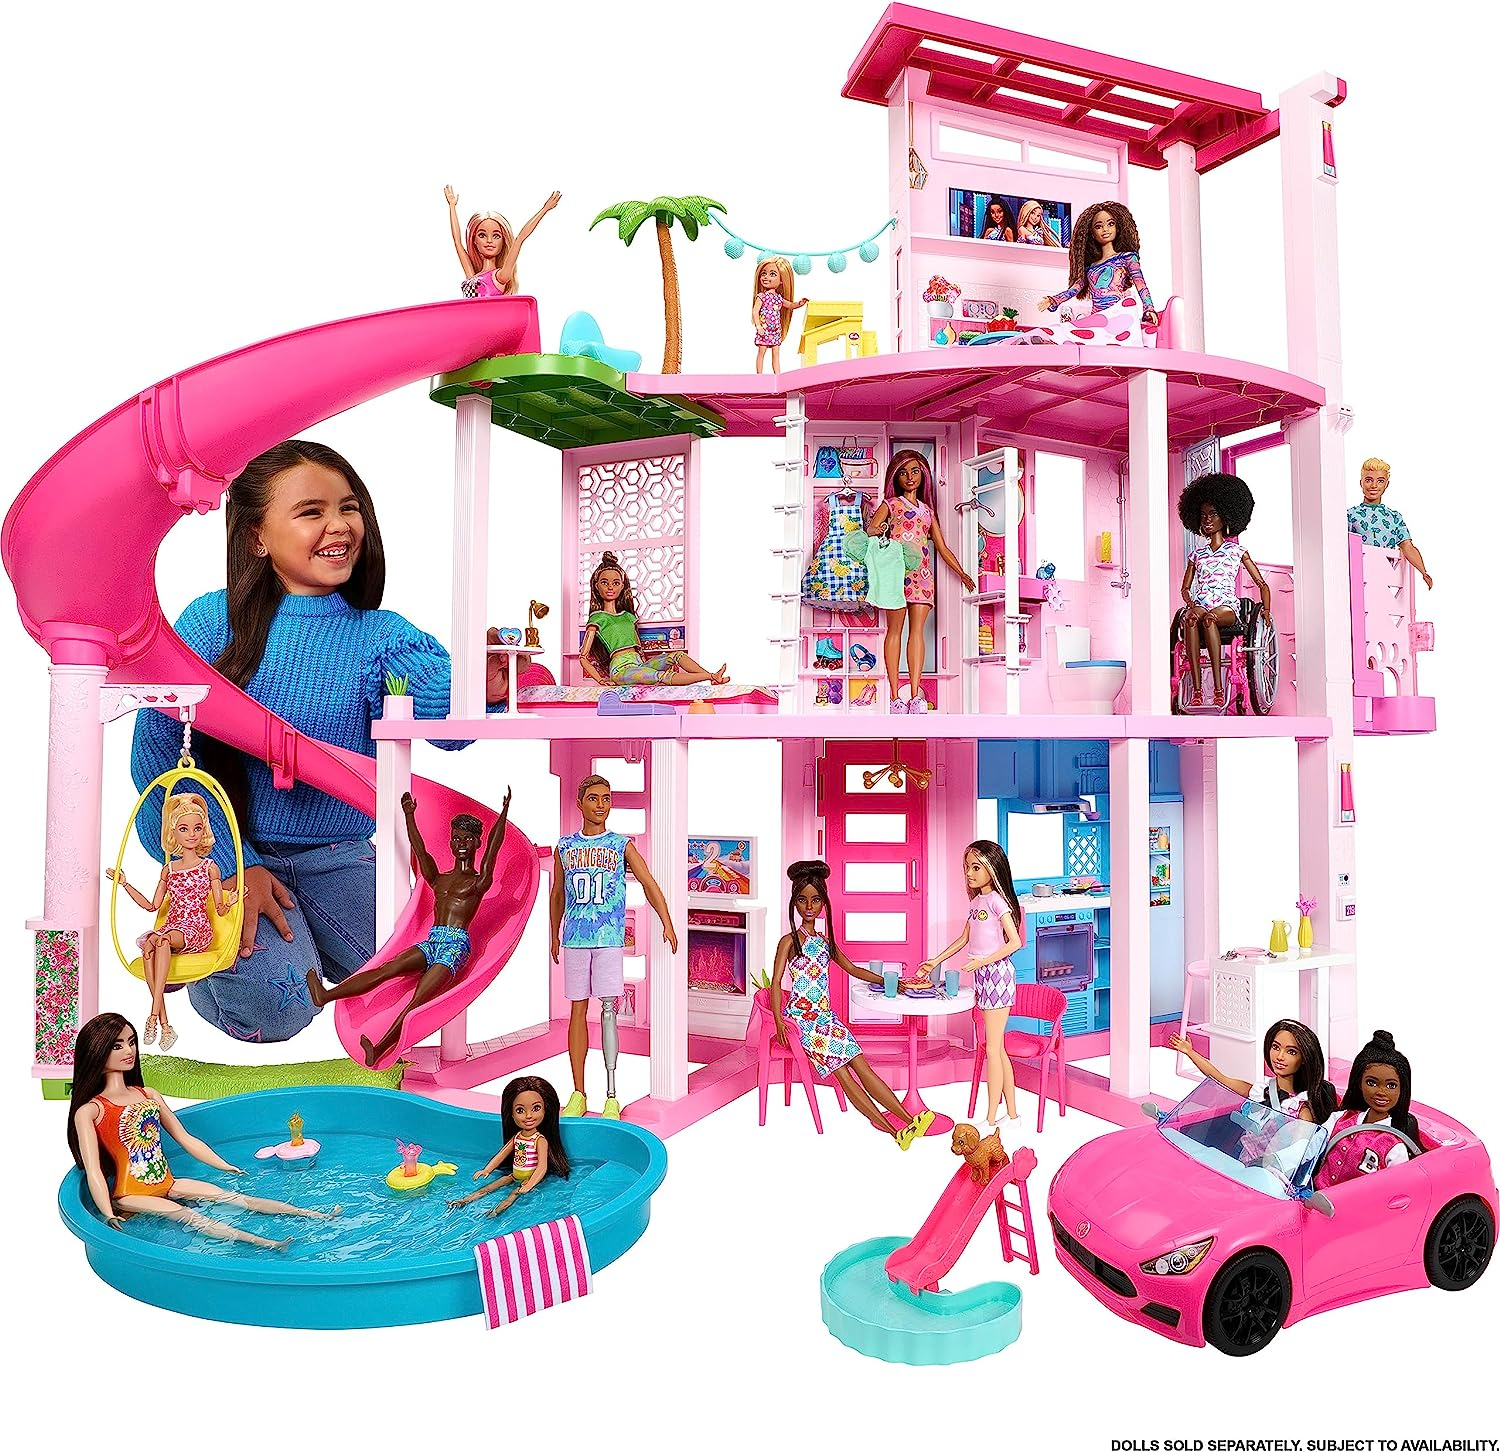 Barbie DreamHouse Adventures !!! Jogo da casa da Barbie!!! Parte da  Piscina!!! Parte 4 